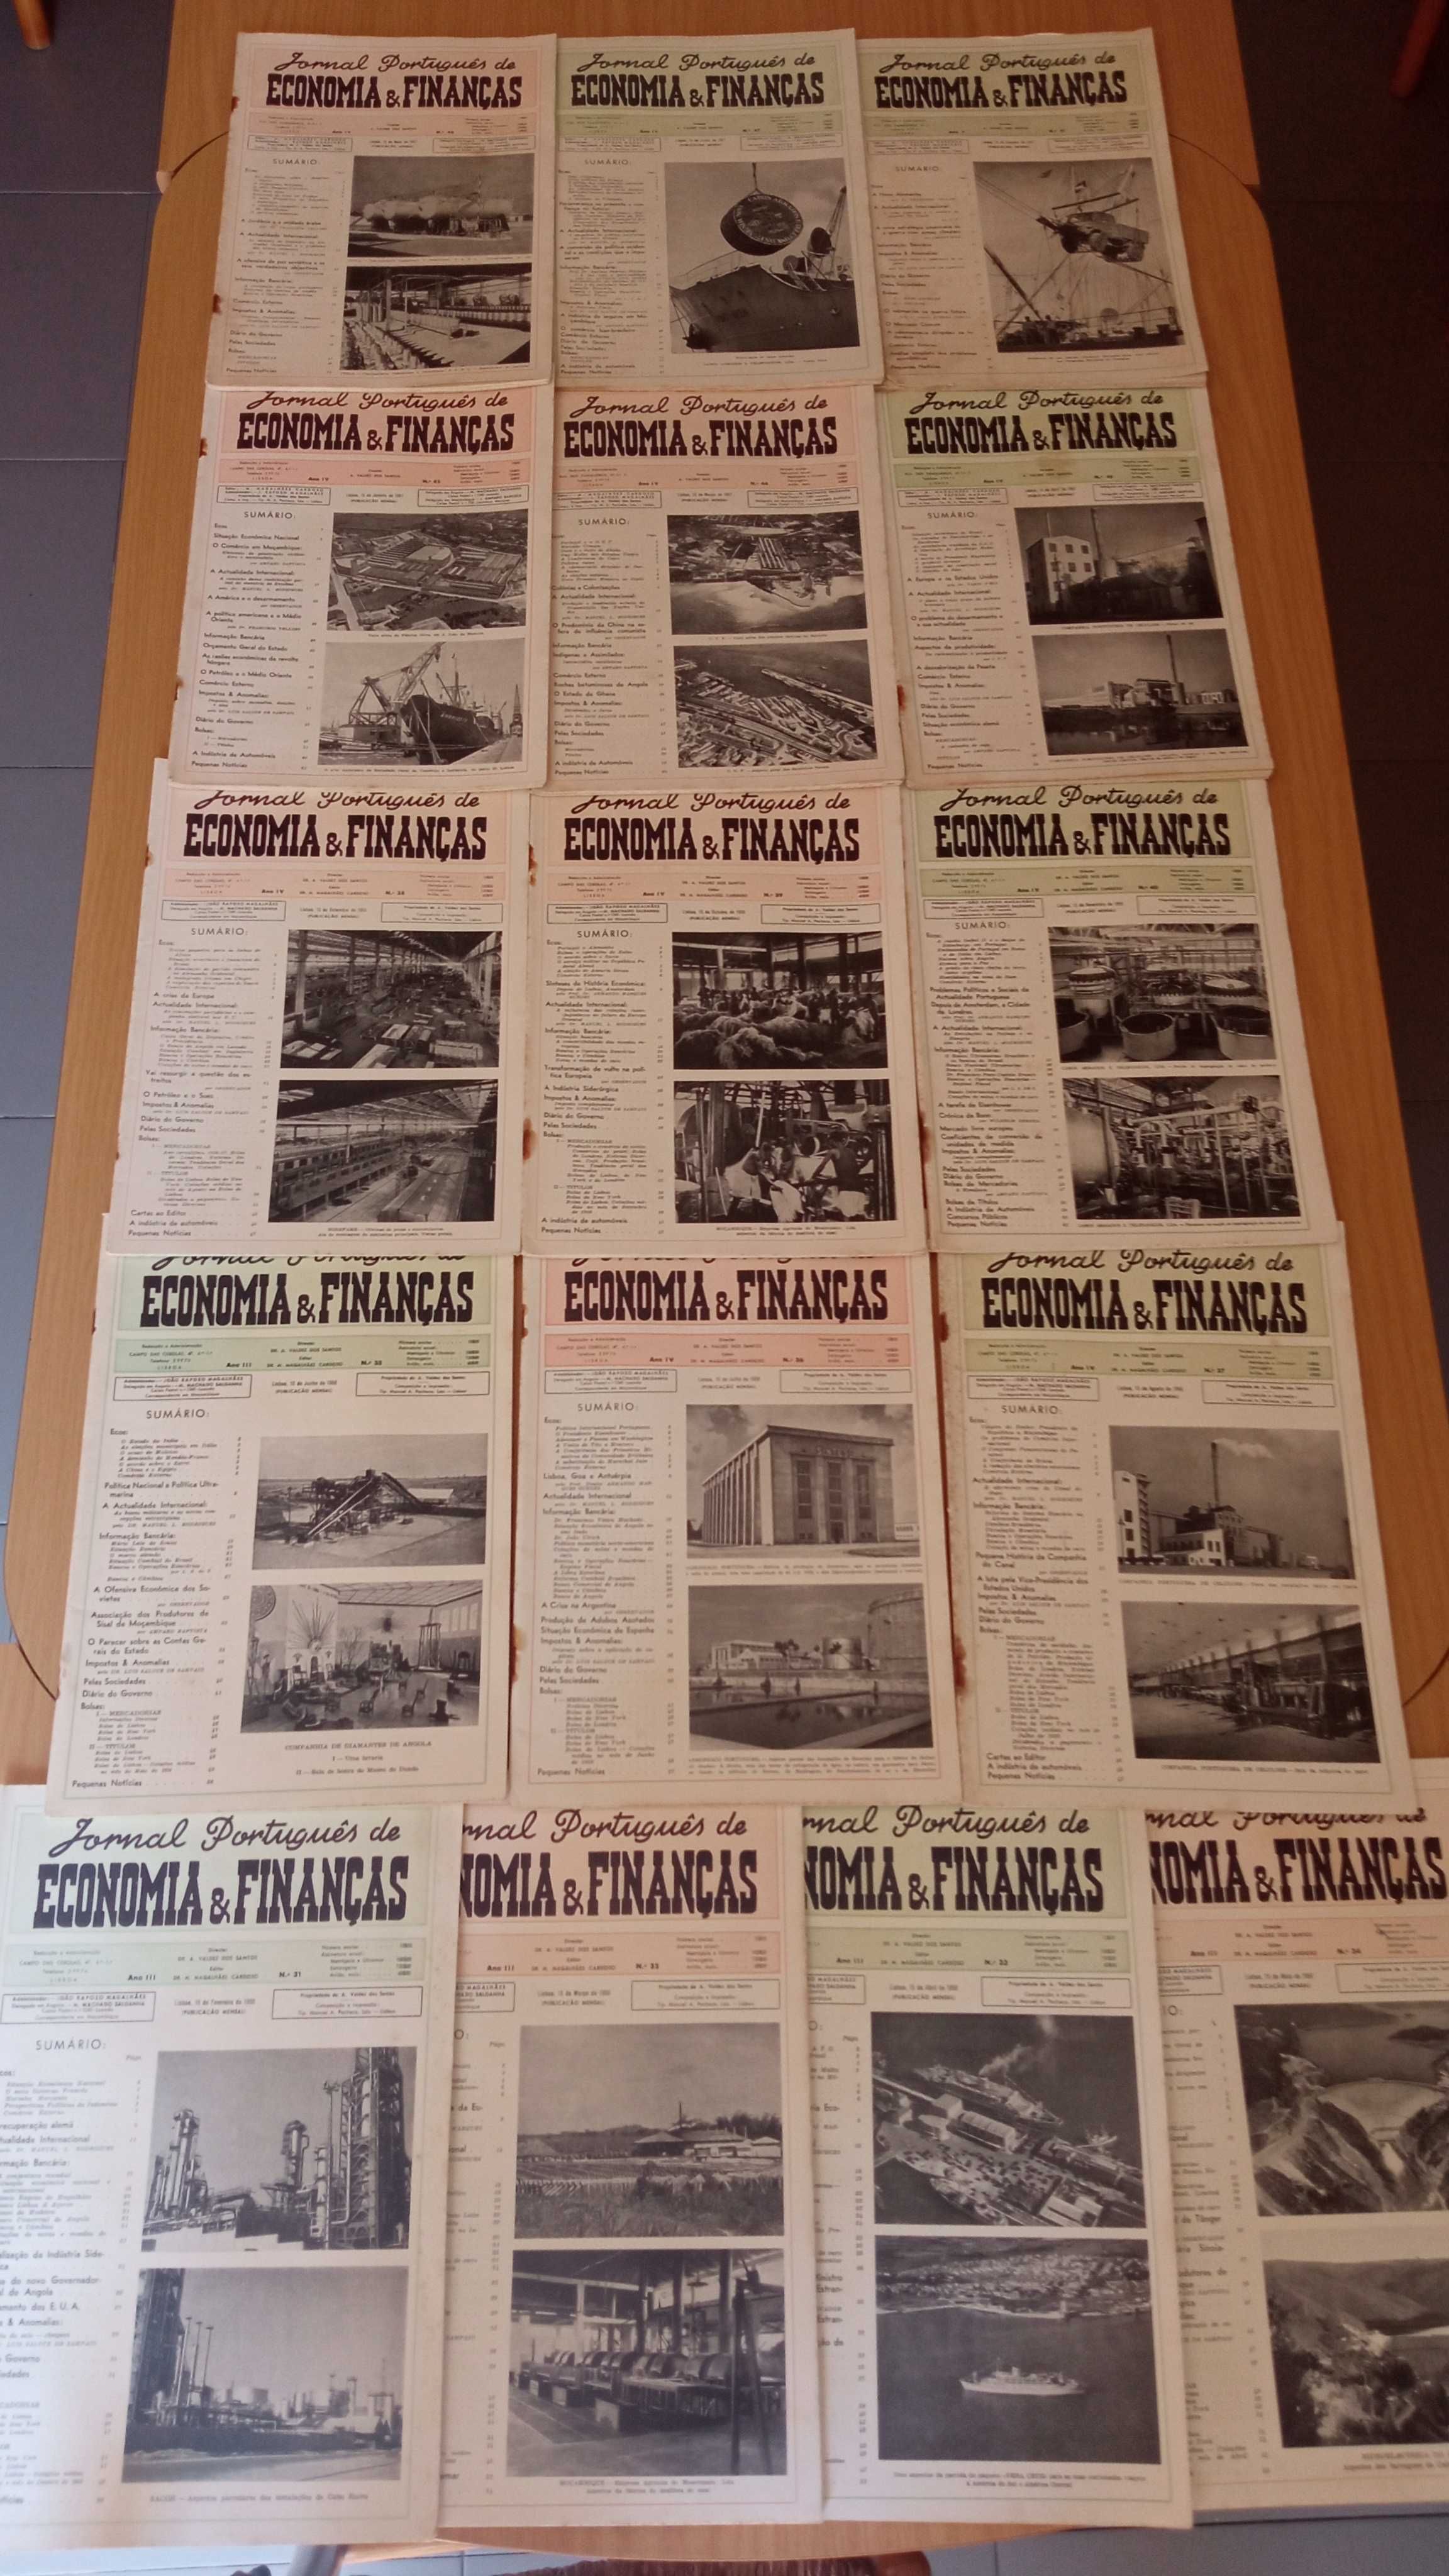 16 nºs do “Jornal Português de Economia e Finanças”, anos 1956 e 1957